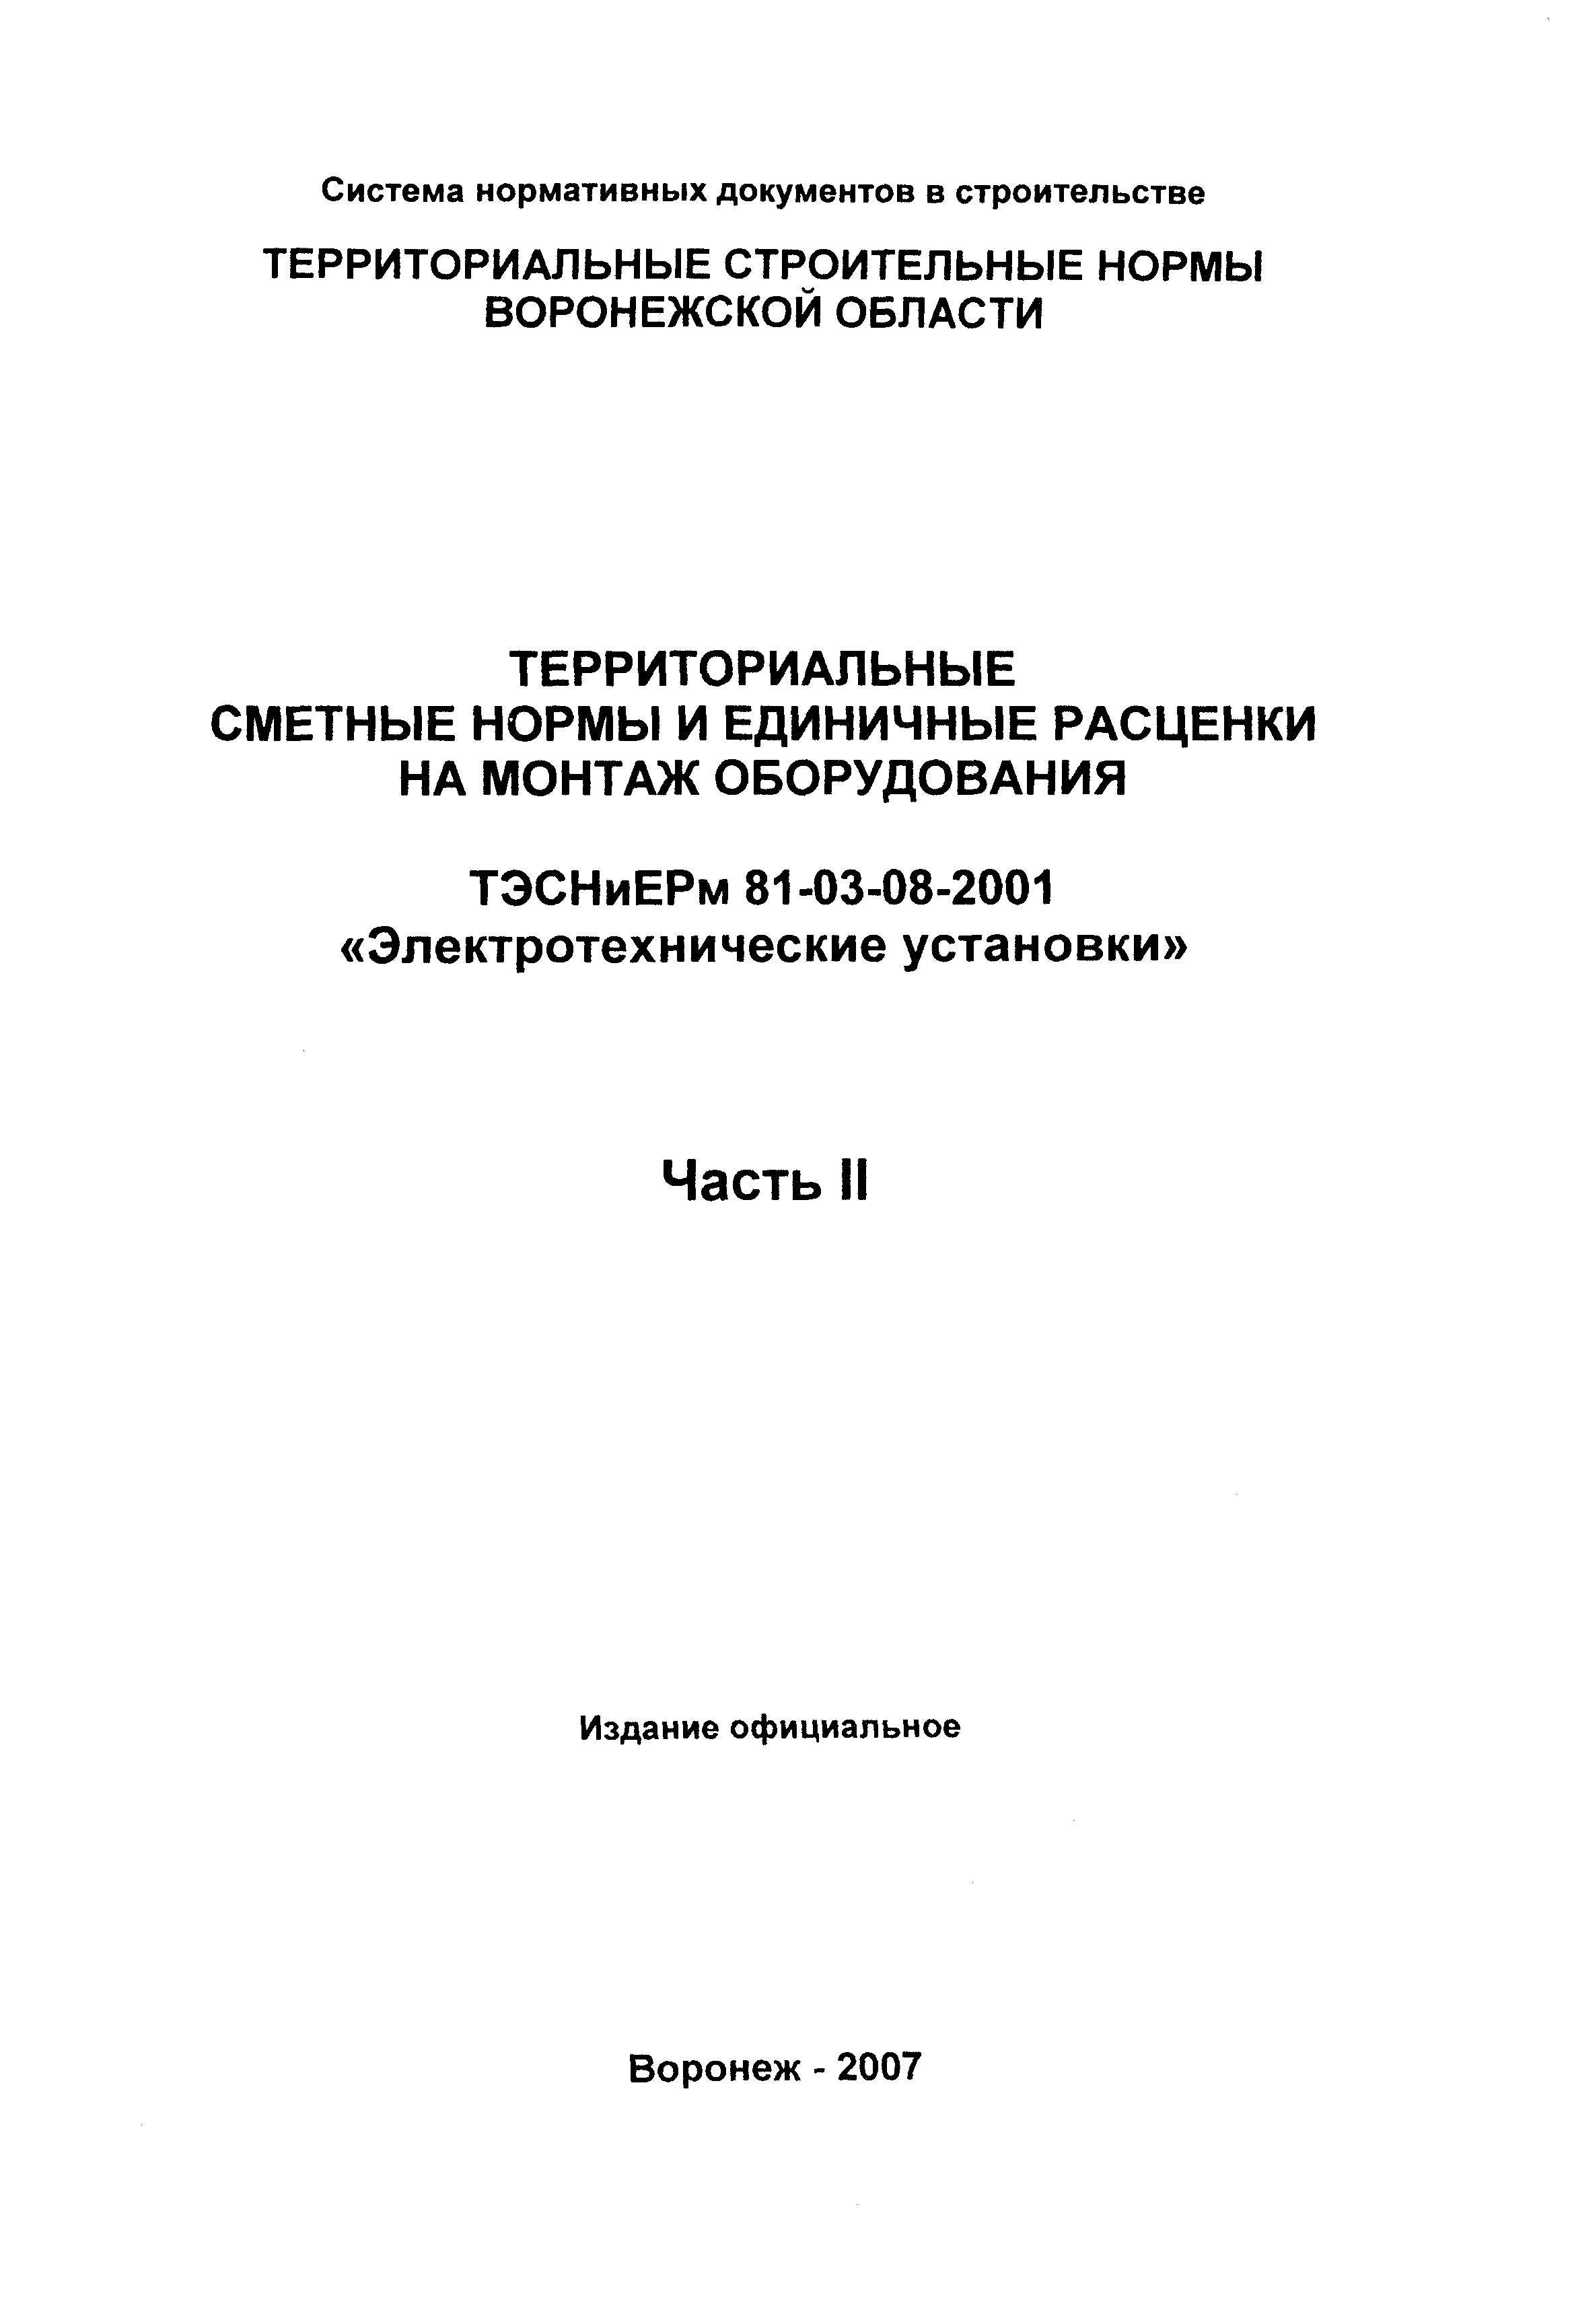 ТЭСНиЕРм Воронежской области 81-03-08-2001